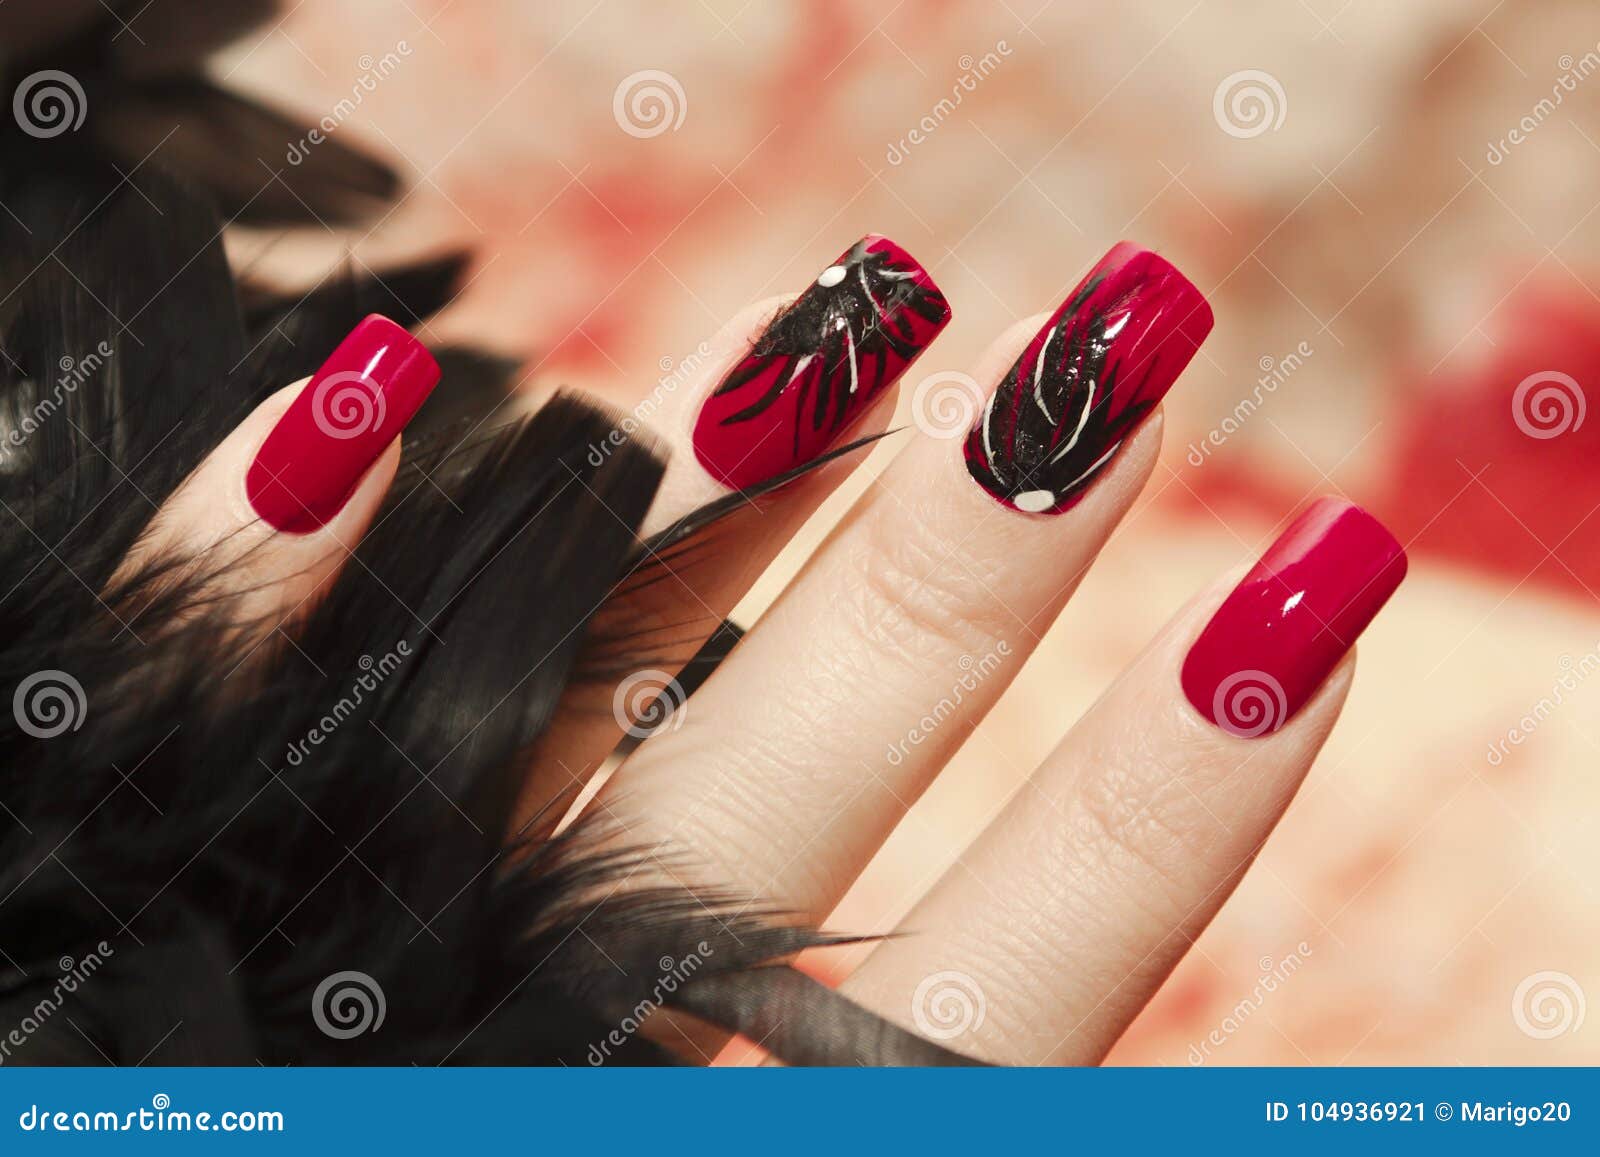 длинные красные ногти фото